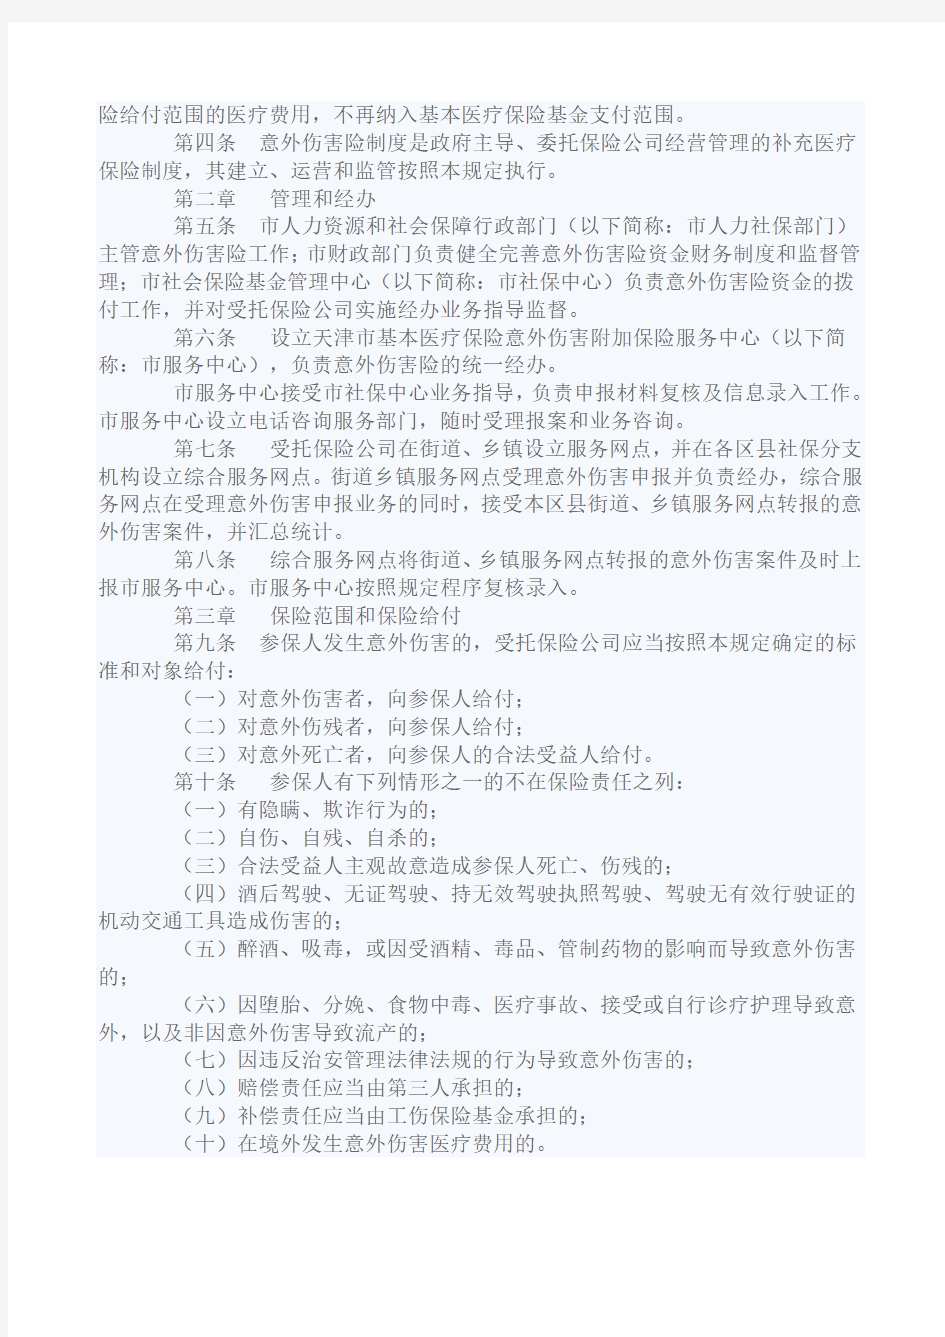 关于印发《天津市基本医疗保险意外伤害附加保险暂行规定》的通知